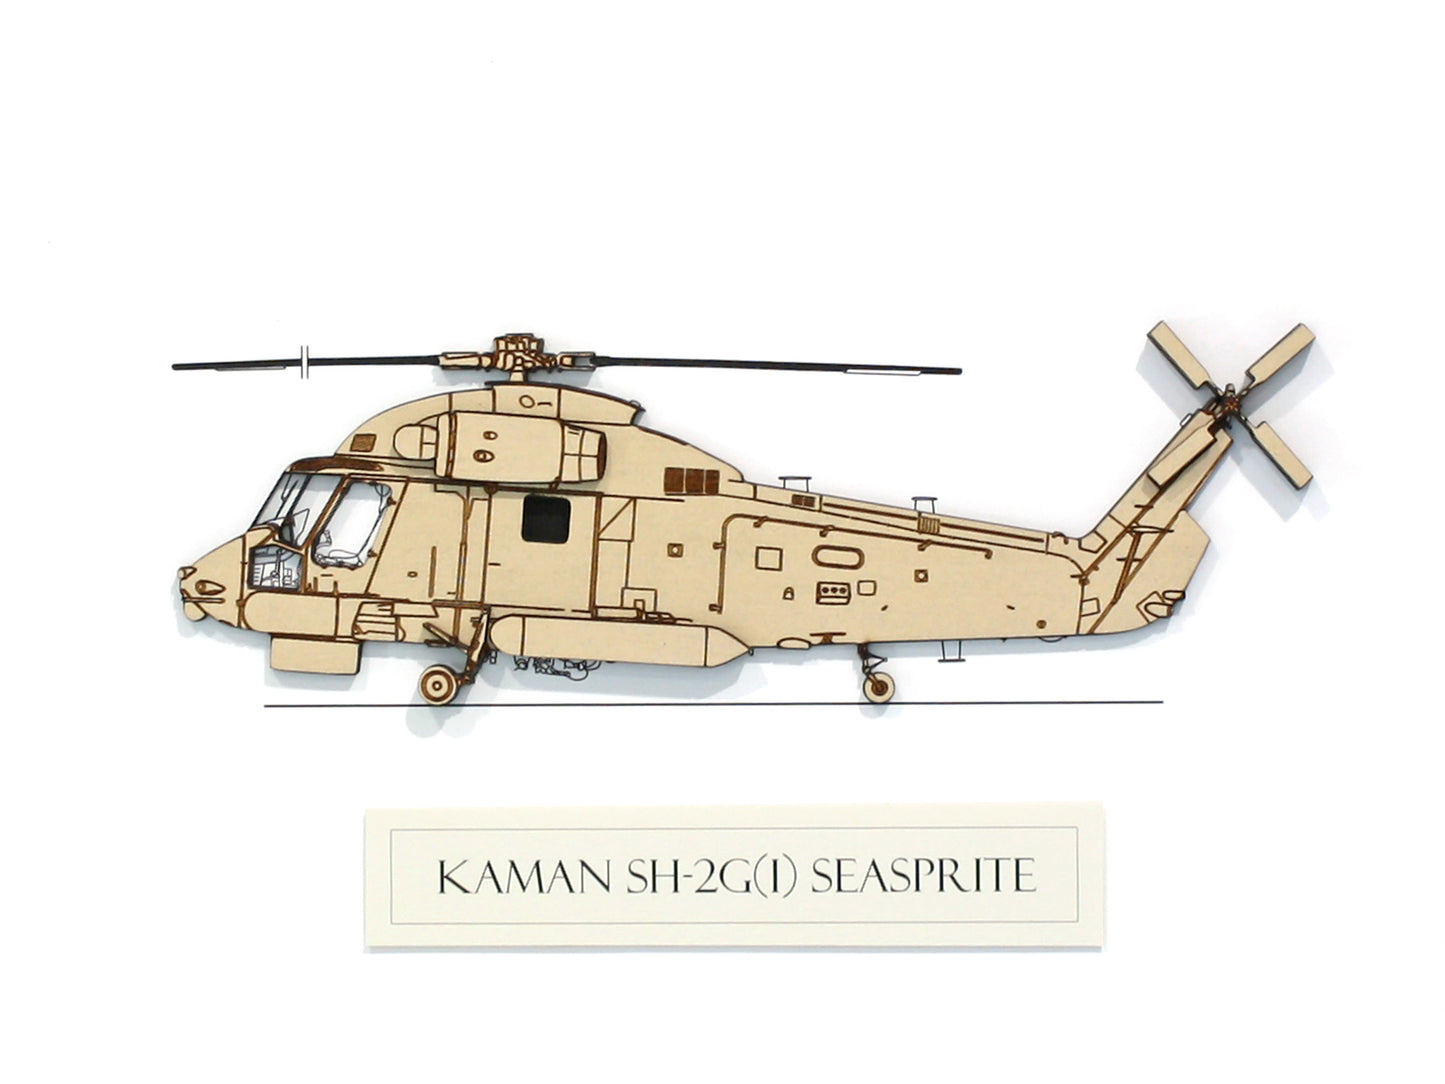 Kaman SH-2G(I) Seasprite aviation art